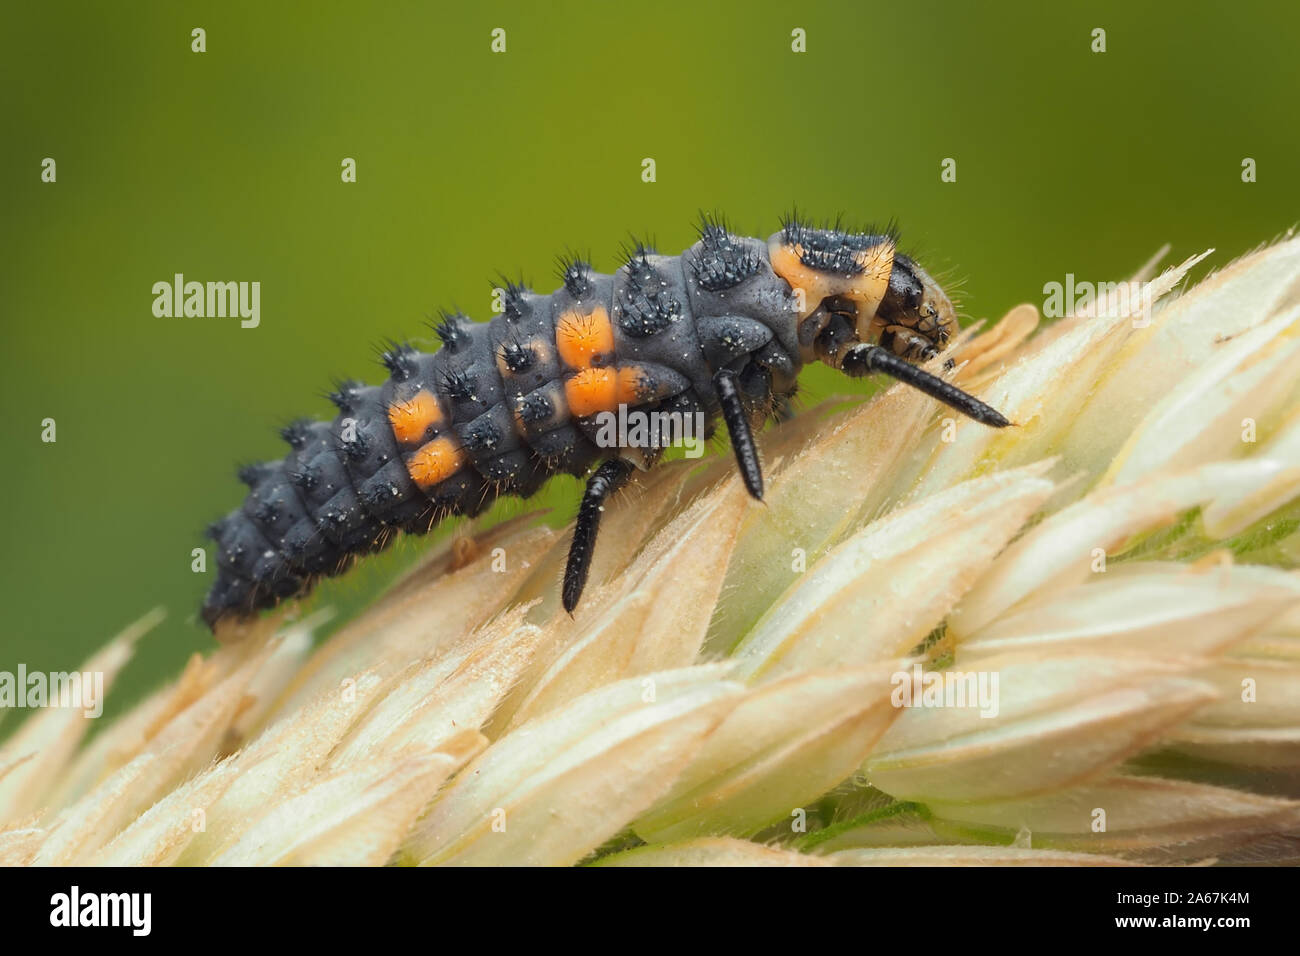 7-spot Ladybird larva on grass seed head. Tipperary, Ireland Stock Photo